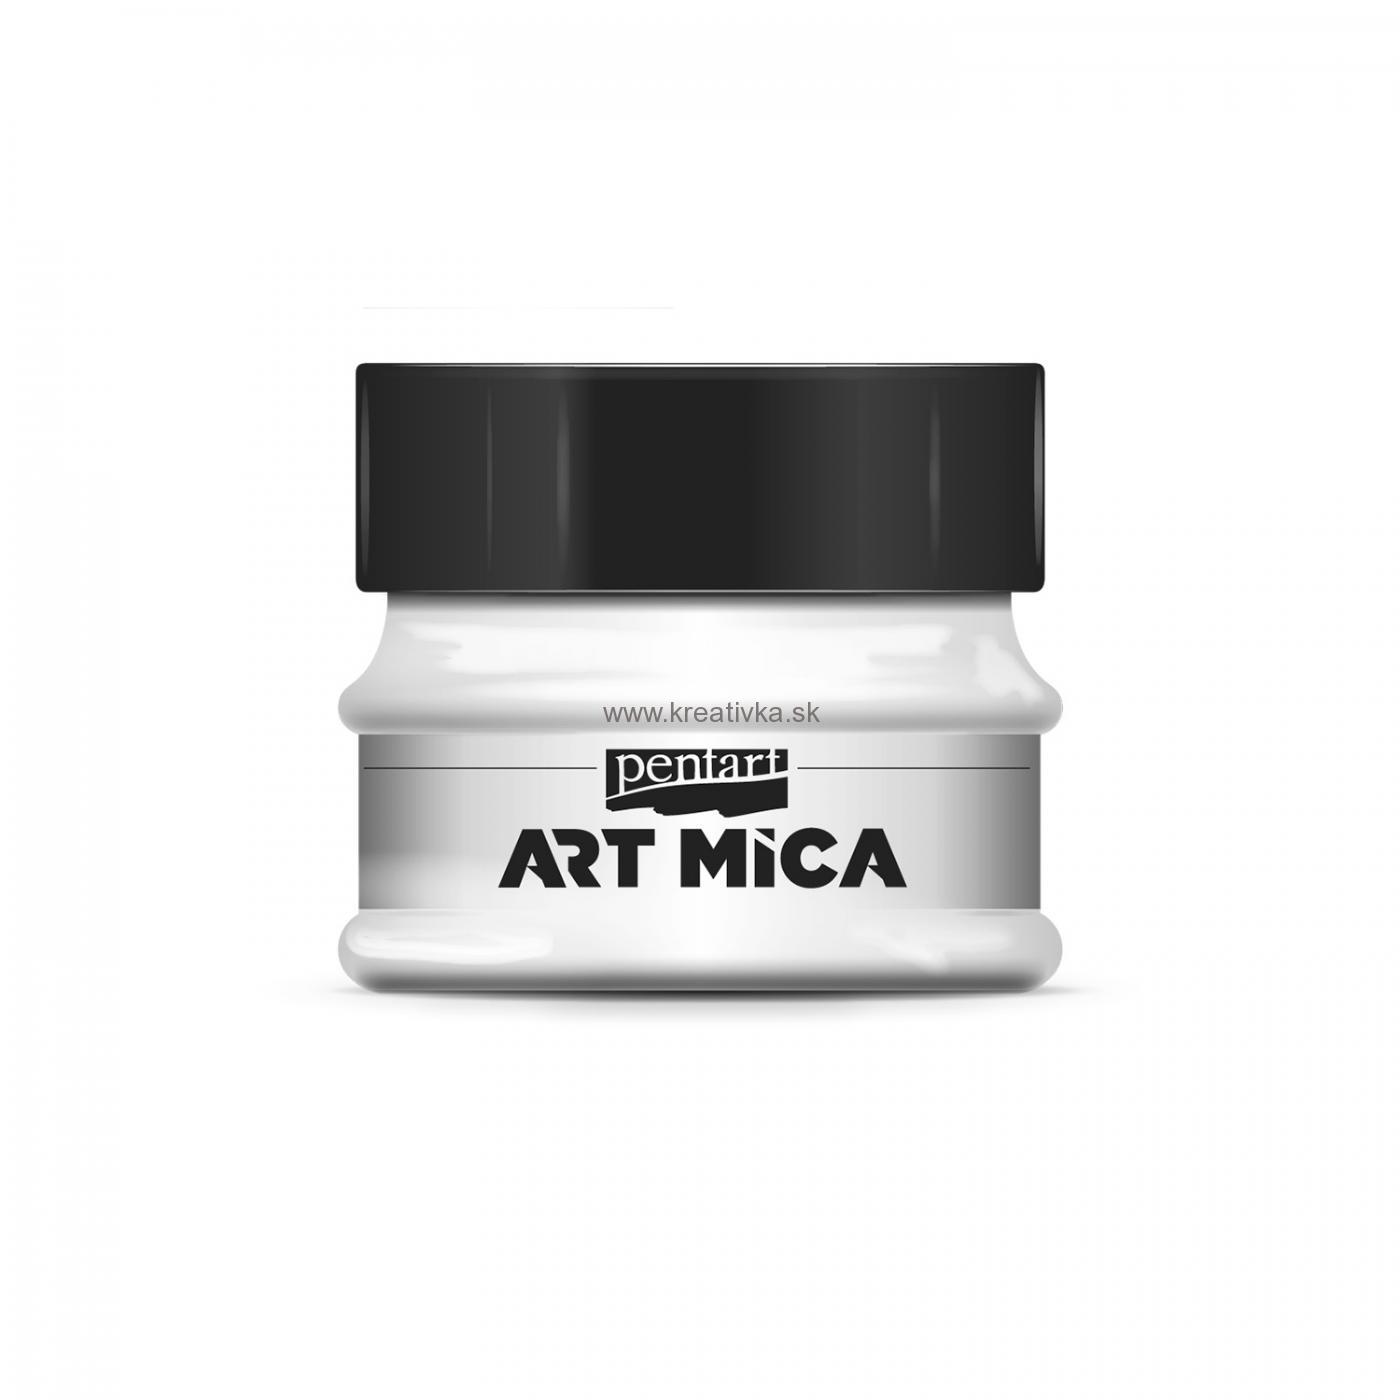 ART MICA minerálny práškový pigment, 9g, perleťová biela